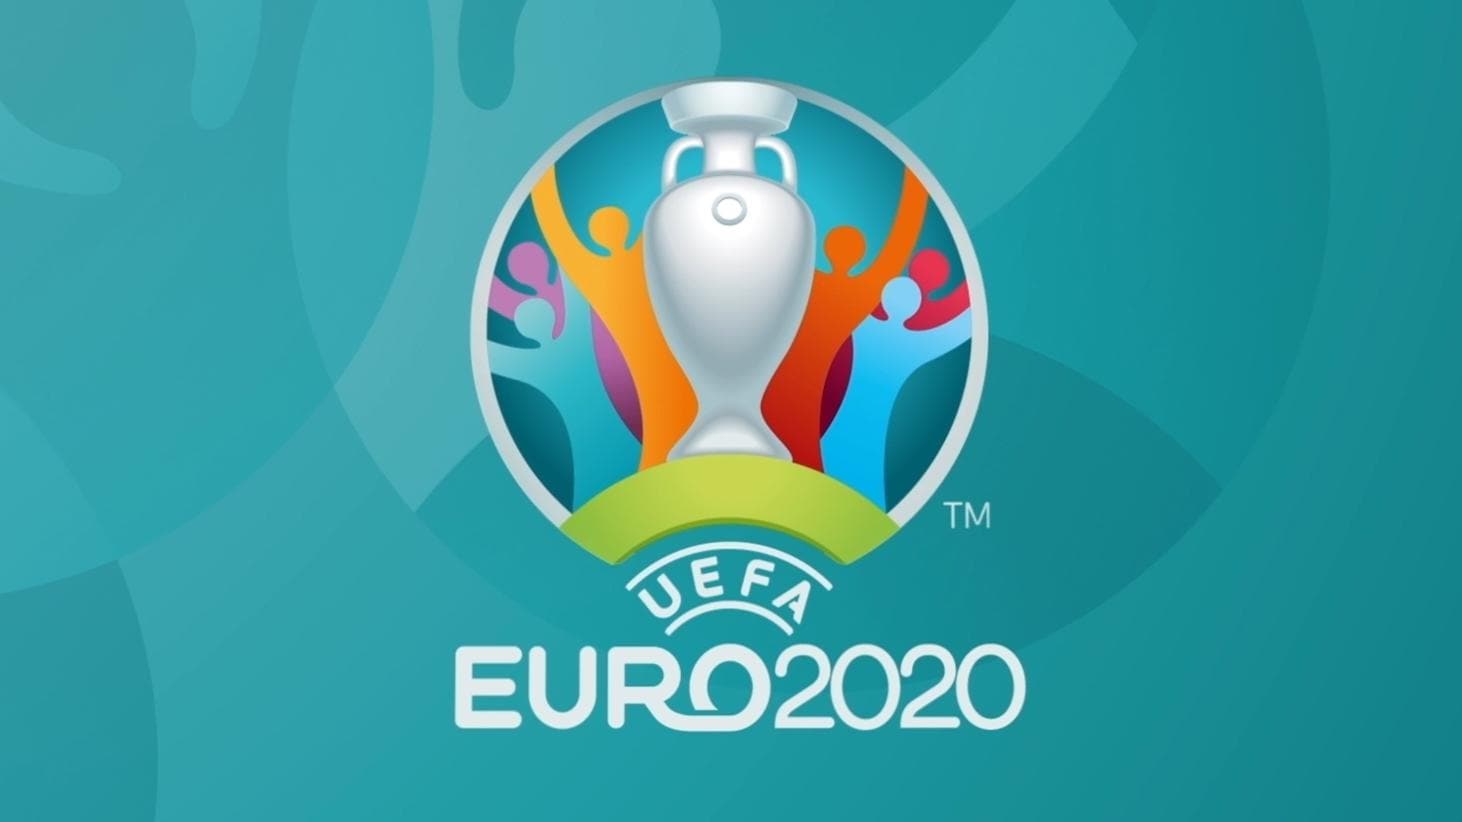 UEFA EURO 2020 